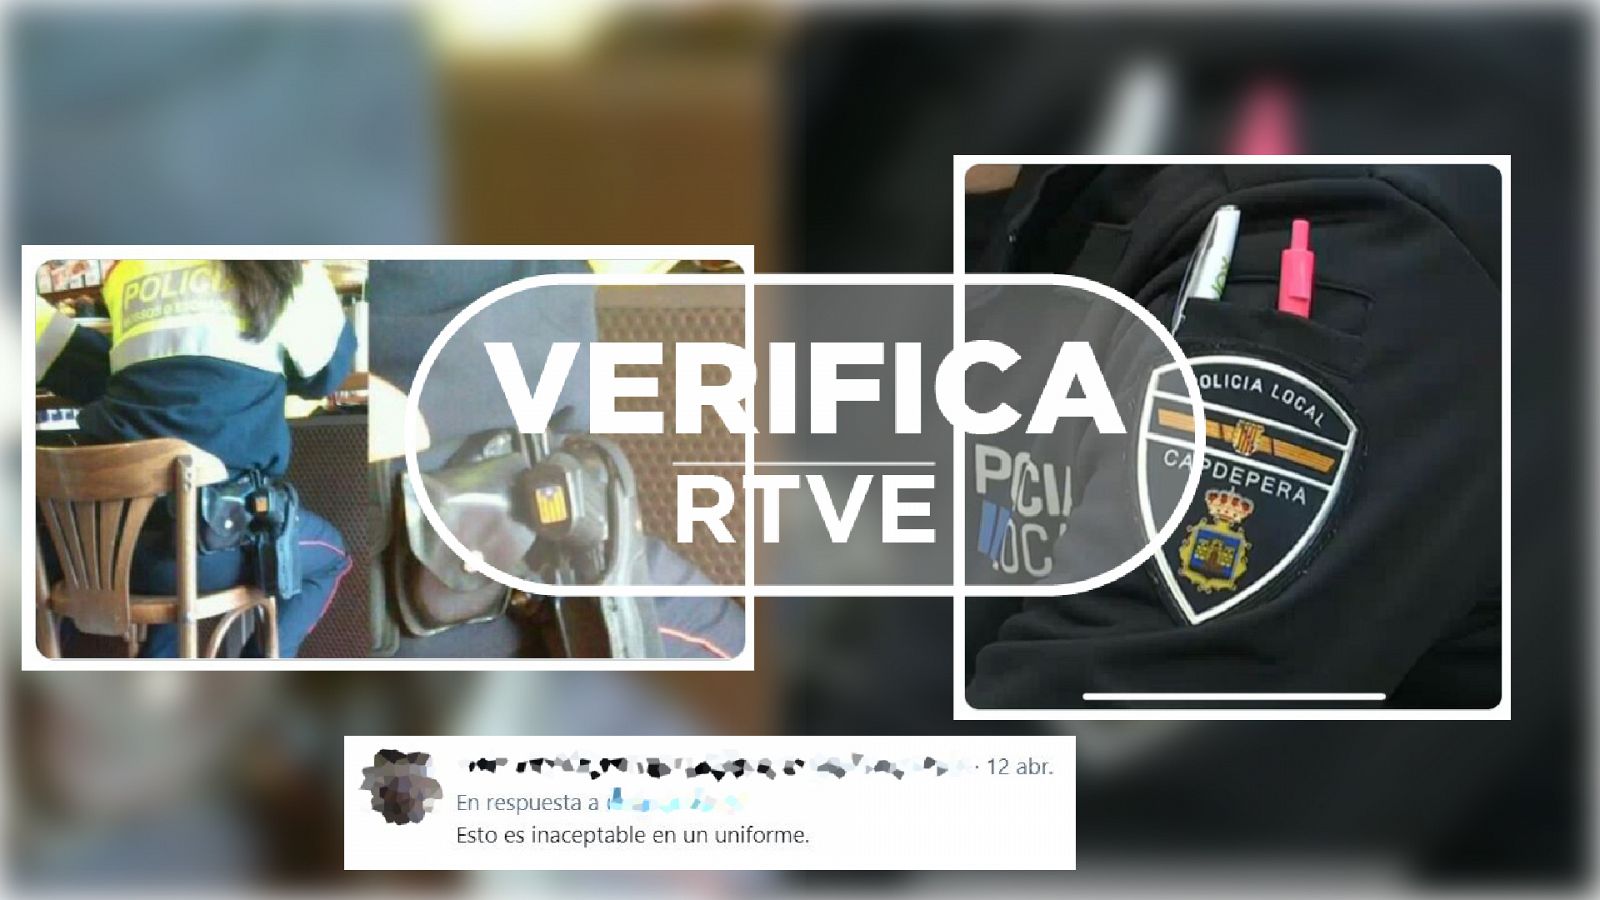 Capturas de imágenes que siembran dudas sobre la compatibilidad de ciertos objetos y elementos con los uniformes reglamentarios de la policía, con el sello de VerificaRTVE